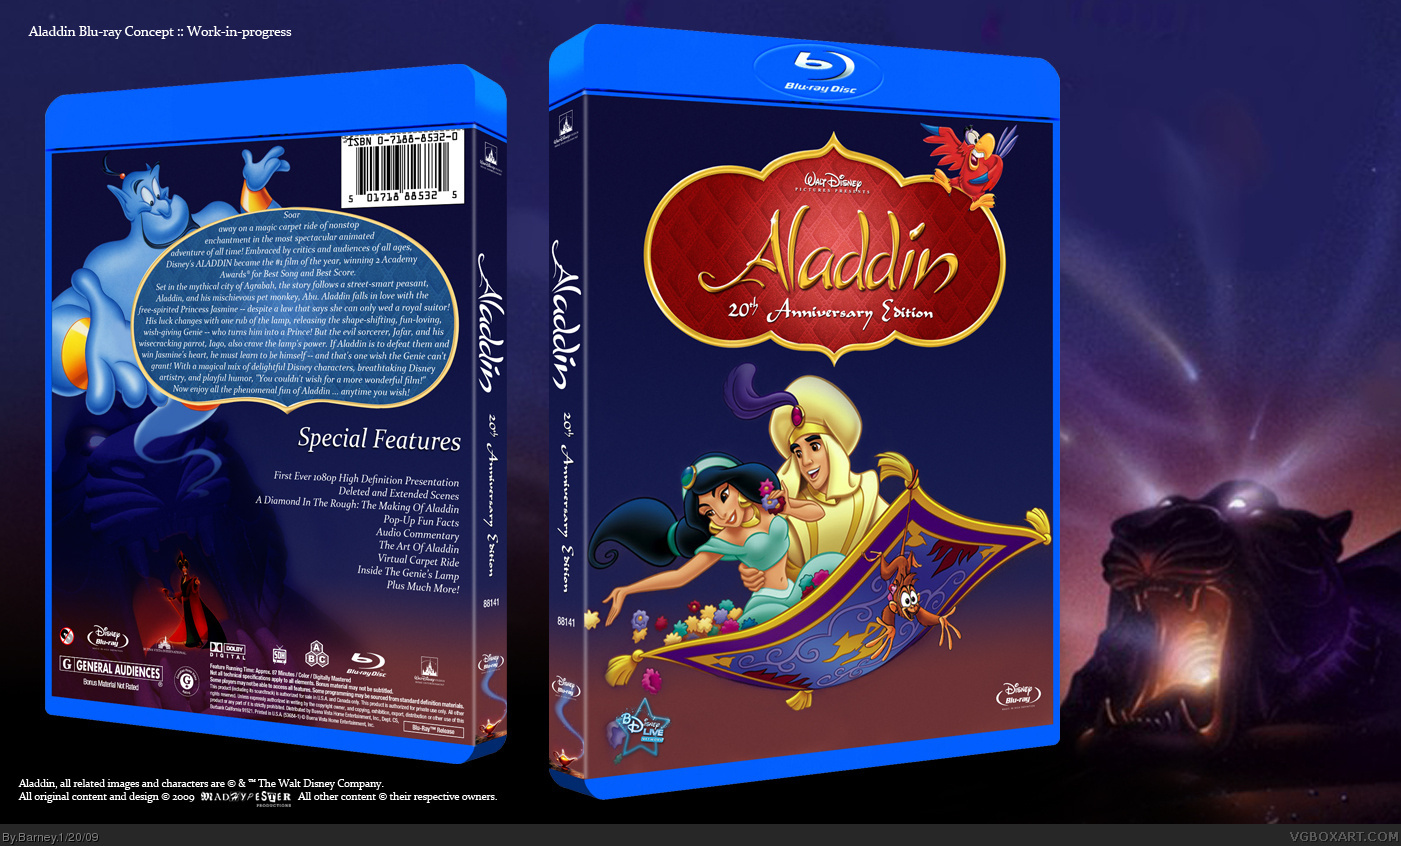 Aladdin (Blu-ray) box cover